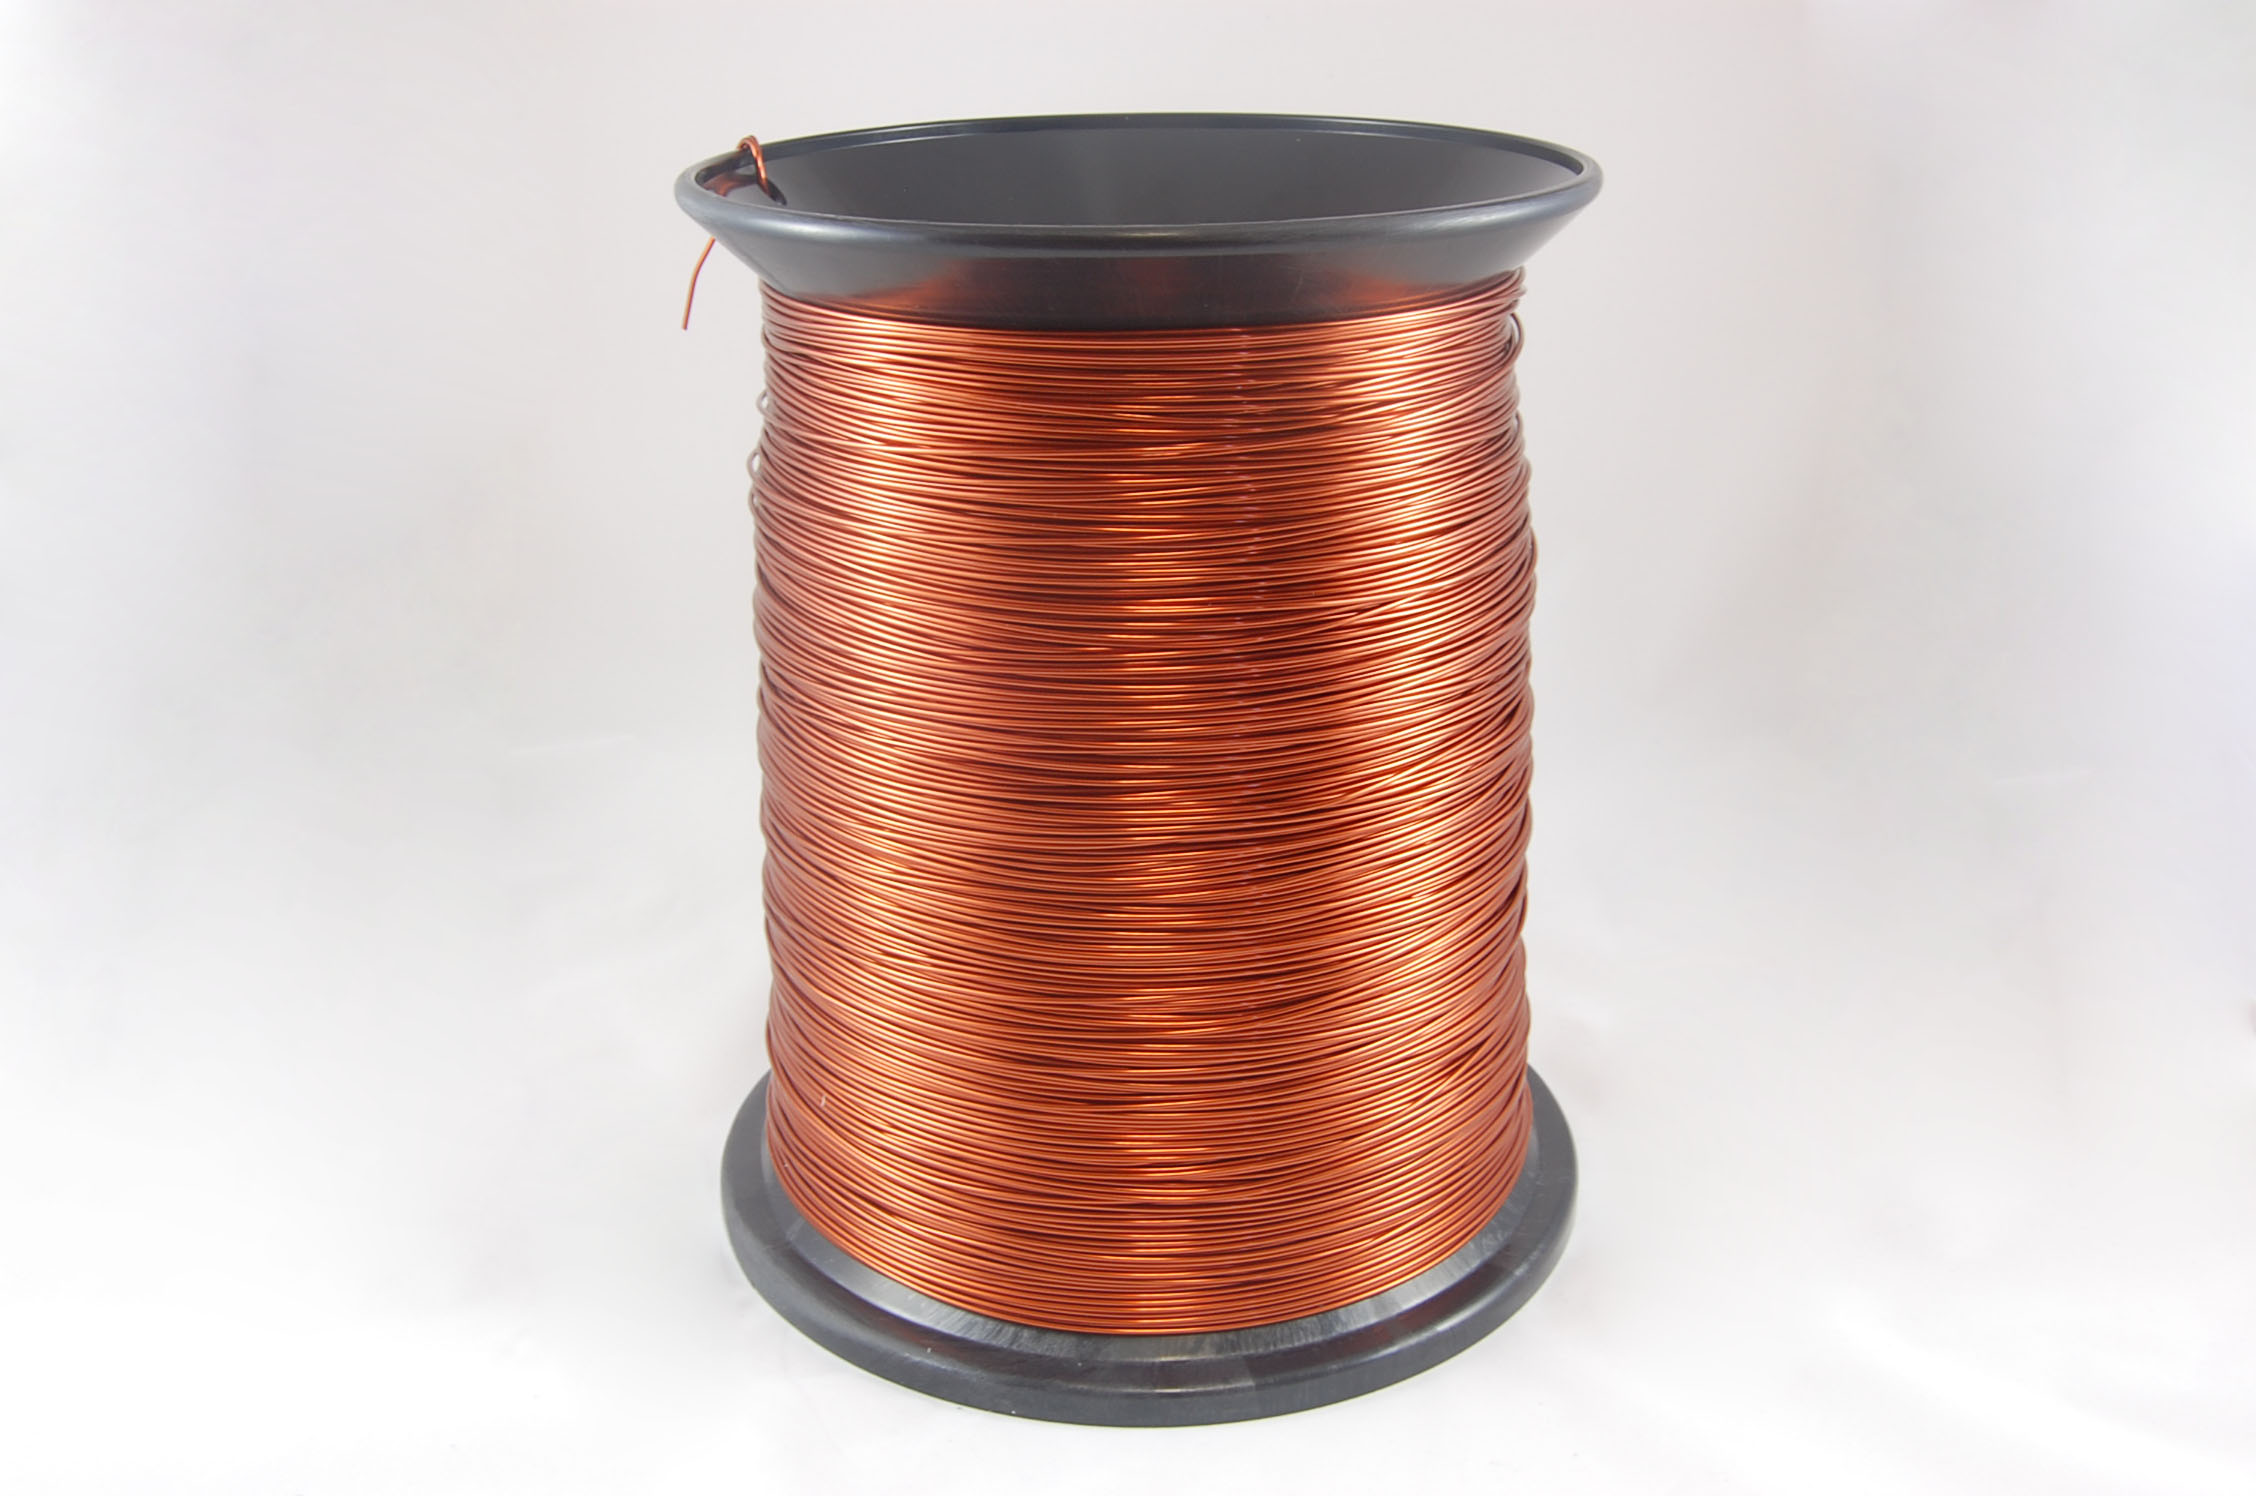 #14 Single GP/MR-200 Round MW 35 Copper Magnet Wire 200°C, copper, 85 LB box (average wght.)